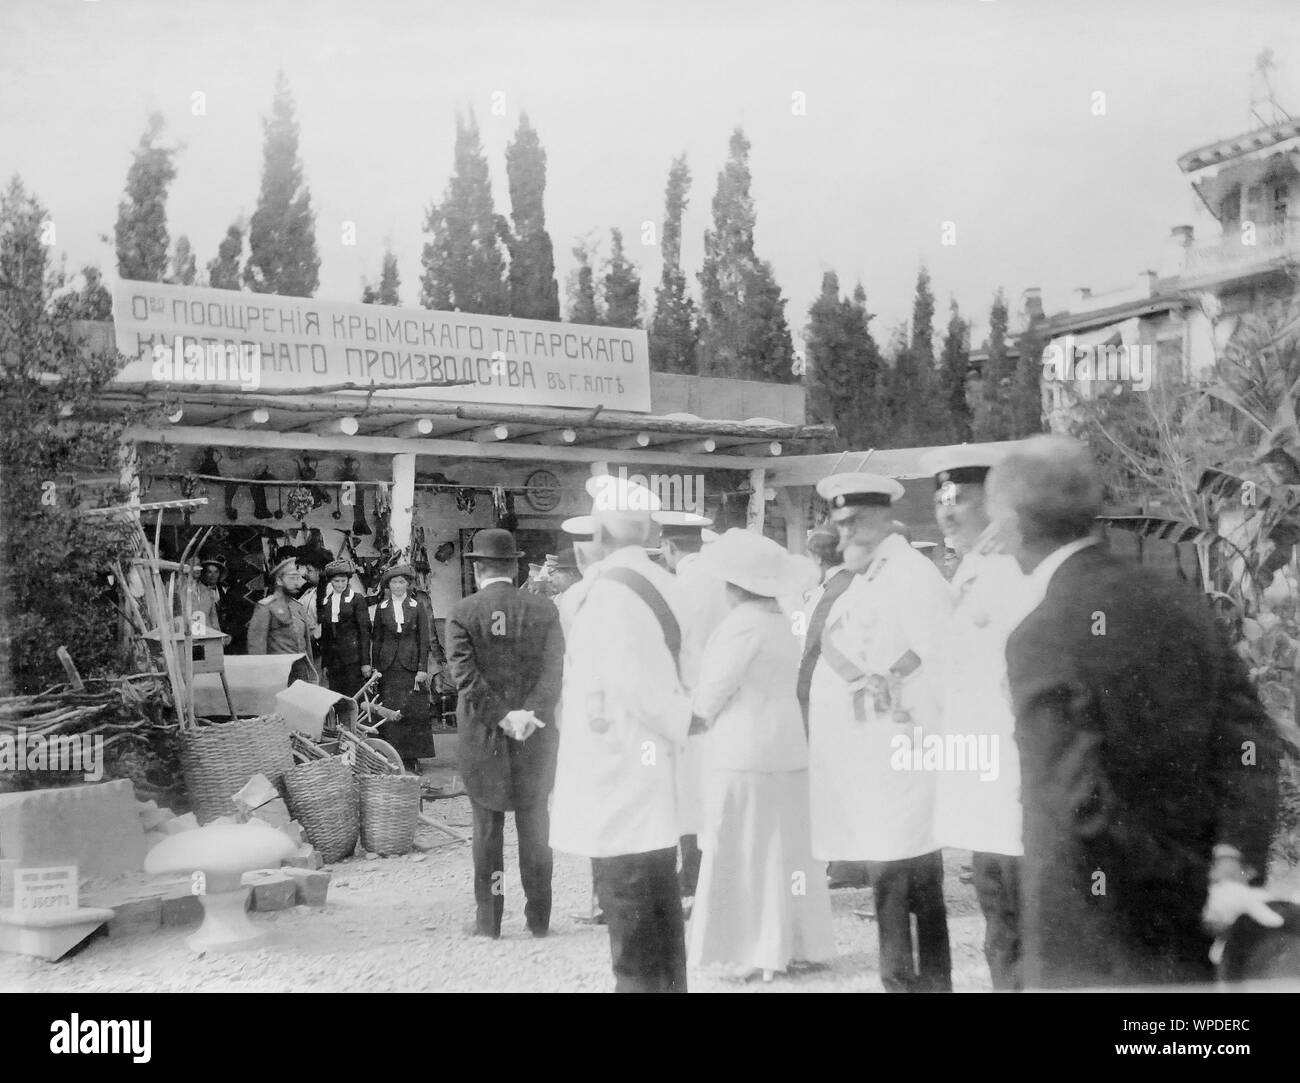 Imperatore russo Nicholas II con la famiglia a Yalta, Crimea all inizio del ventesimo secolo. Imperatore Nicola II osservando la Società per la promozione di Crimea Tatar Produzione artigianale di Yalta. Foto Stock